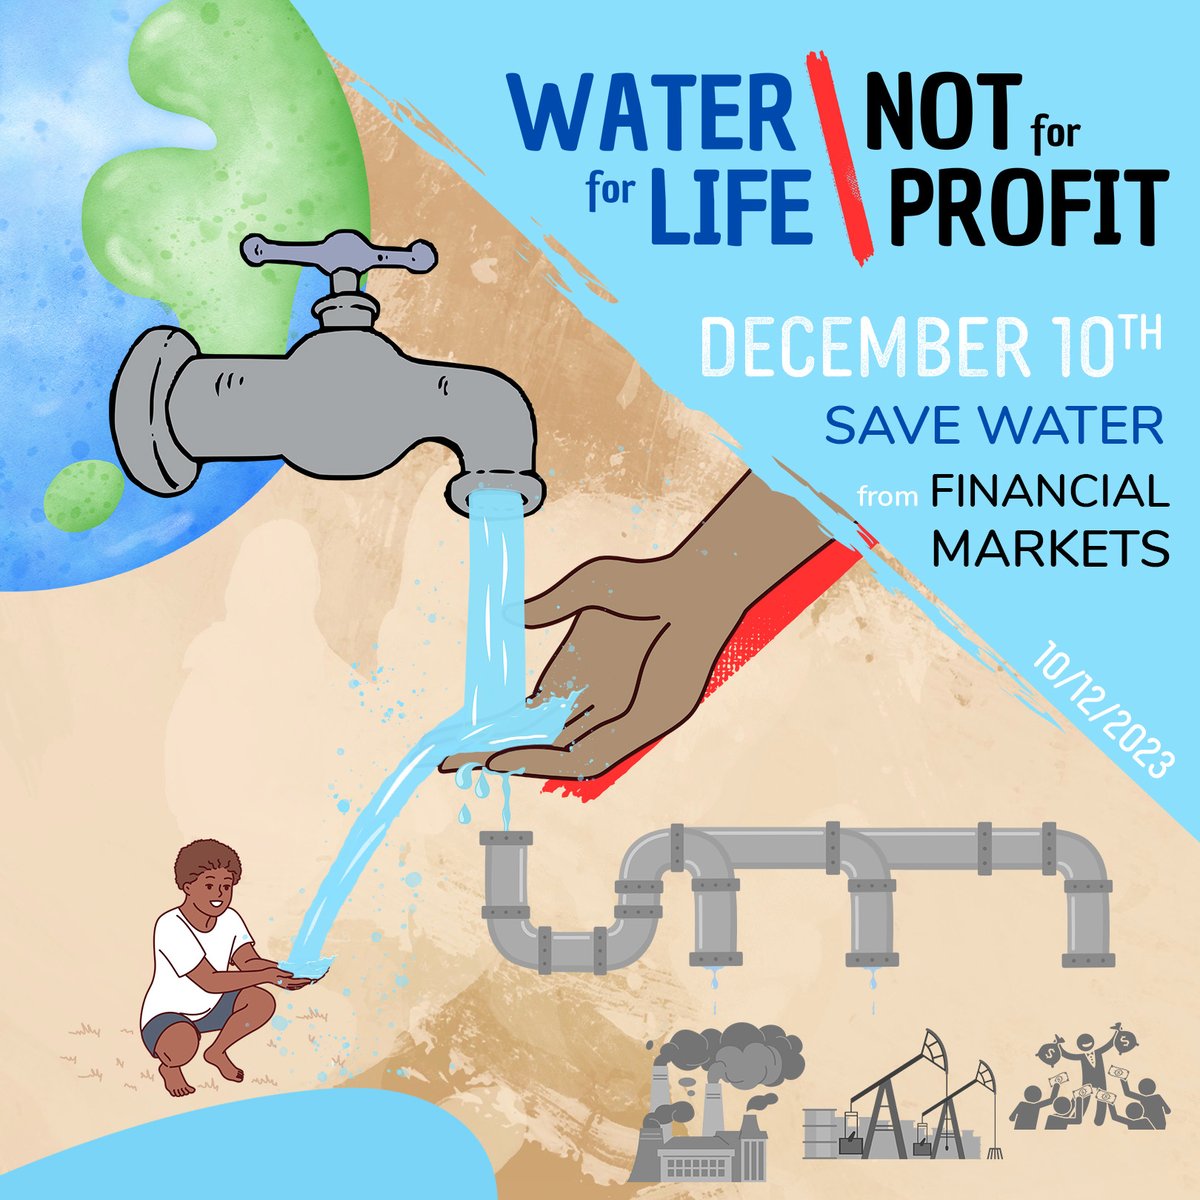 Lancement de la campagne #waterforlifenotforprofit💧≠💰

L’entrée de l’eau à la bourse en 2020 présente de graves risques pour l’eau potable dans le monde. Jour 1, nous partageons le 1er risque de la marchandisation de l’💧 sur les marchés boursiers.
ℹ️: bit.ly/eaupourlavie